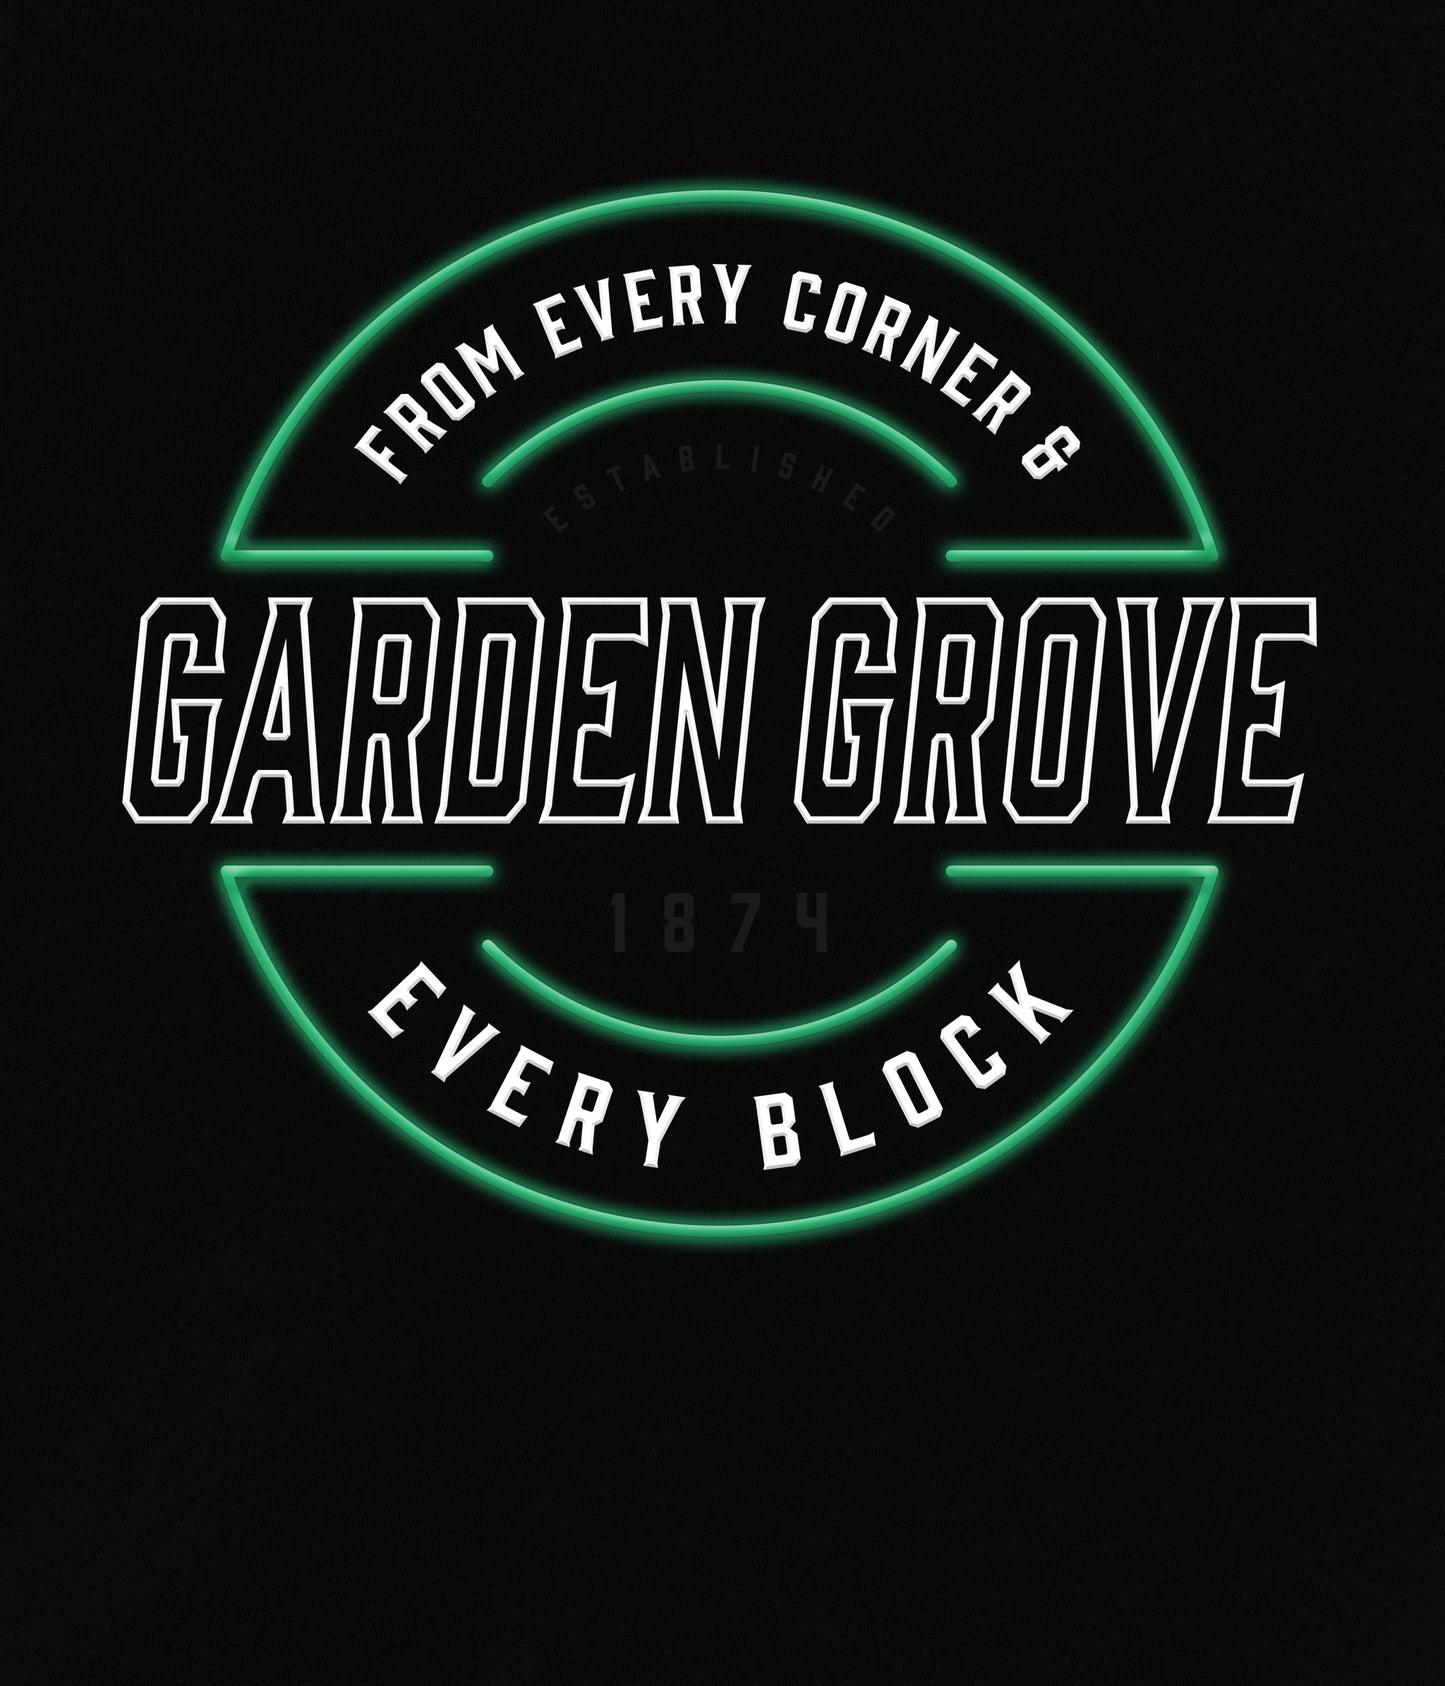 Garden Grove Lit Up Long Sleeve Tee